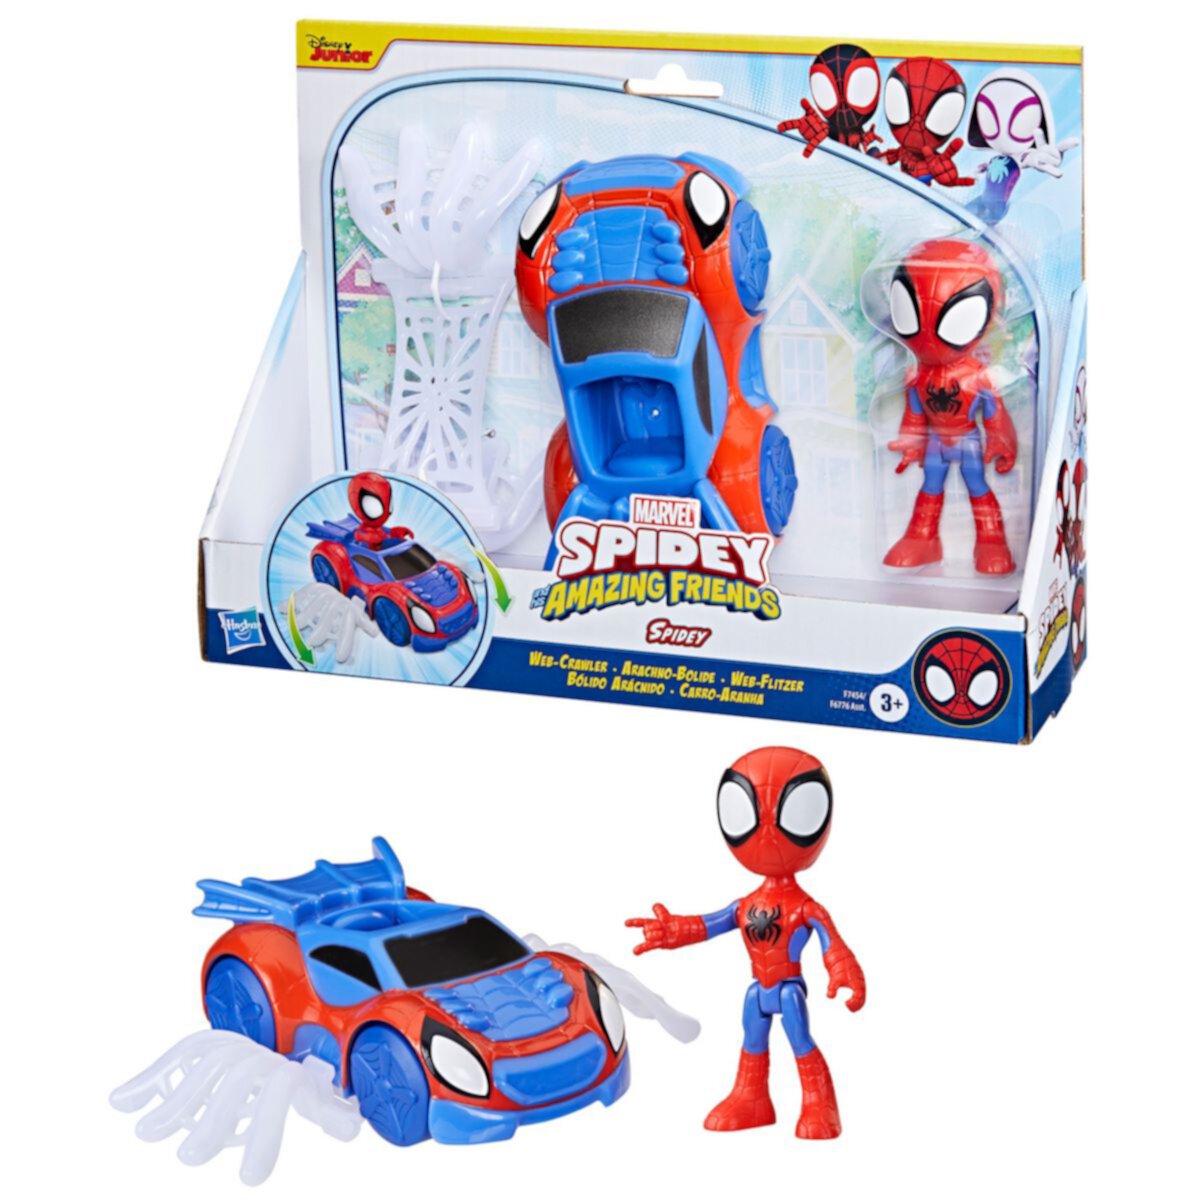 Набор Marvel Spidey & His Amazing Friends Spidey Web Crawler от Hasbro HASBRO